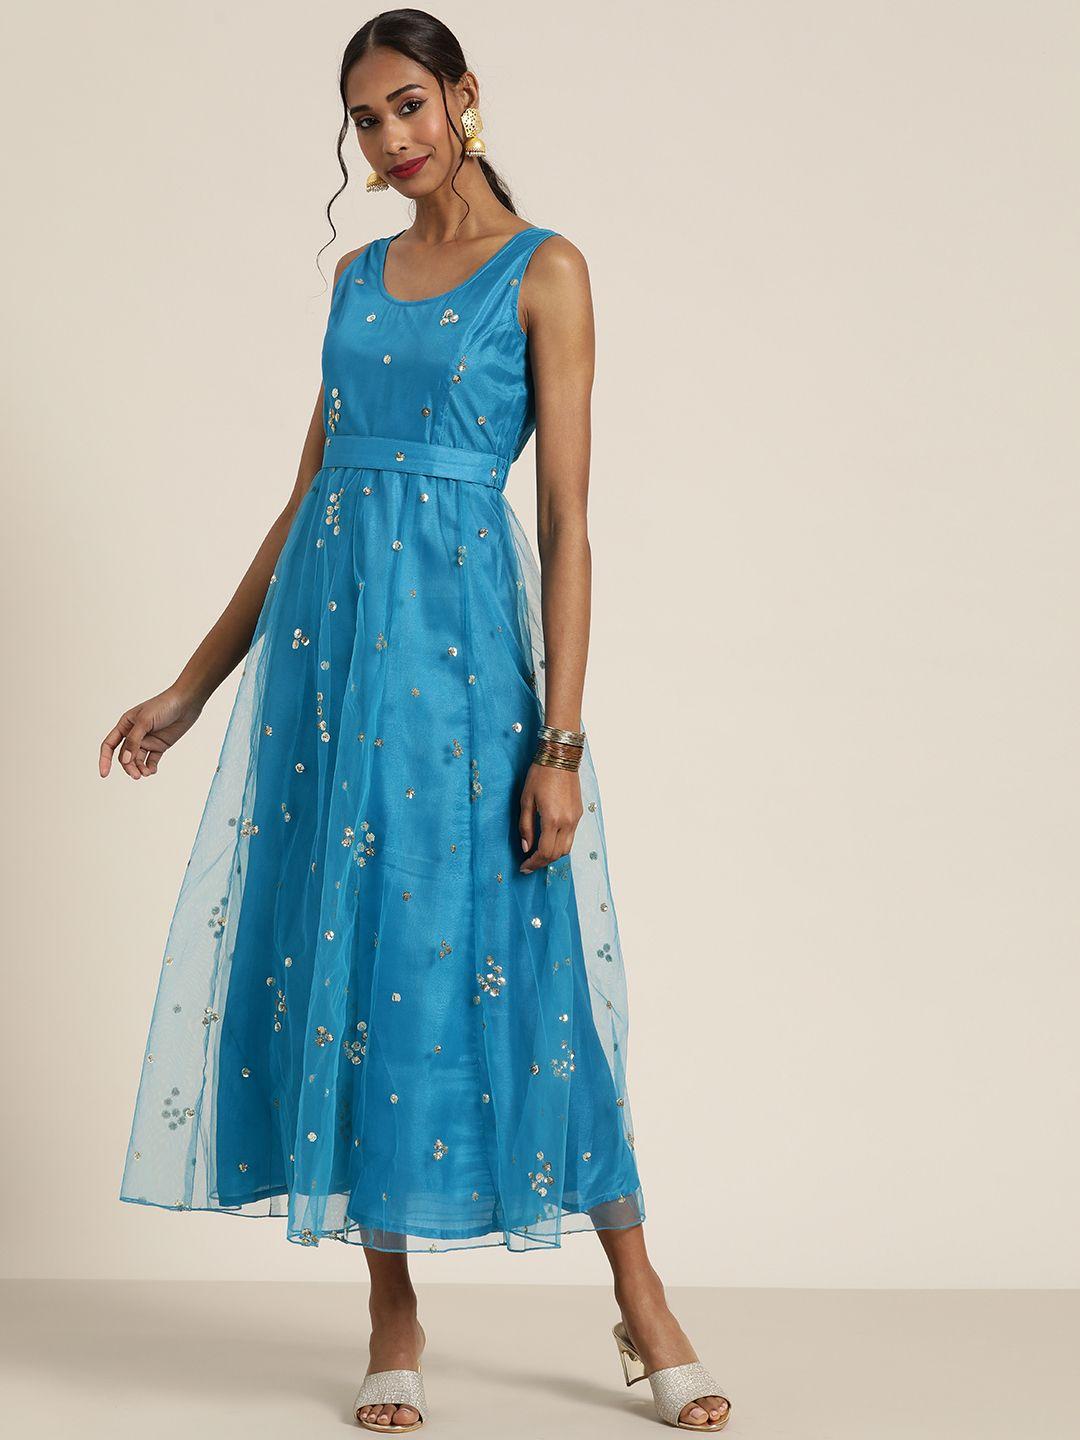 shae by sassafras turquoise blue embellished ethnic a-line midi dress